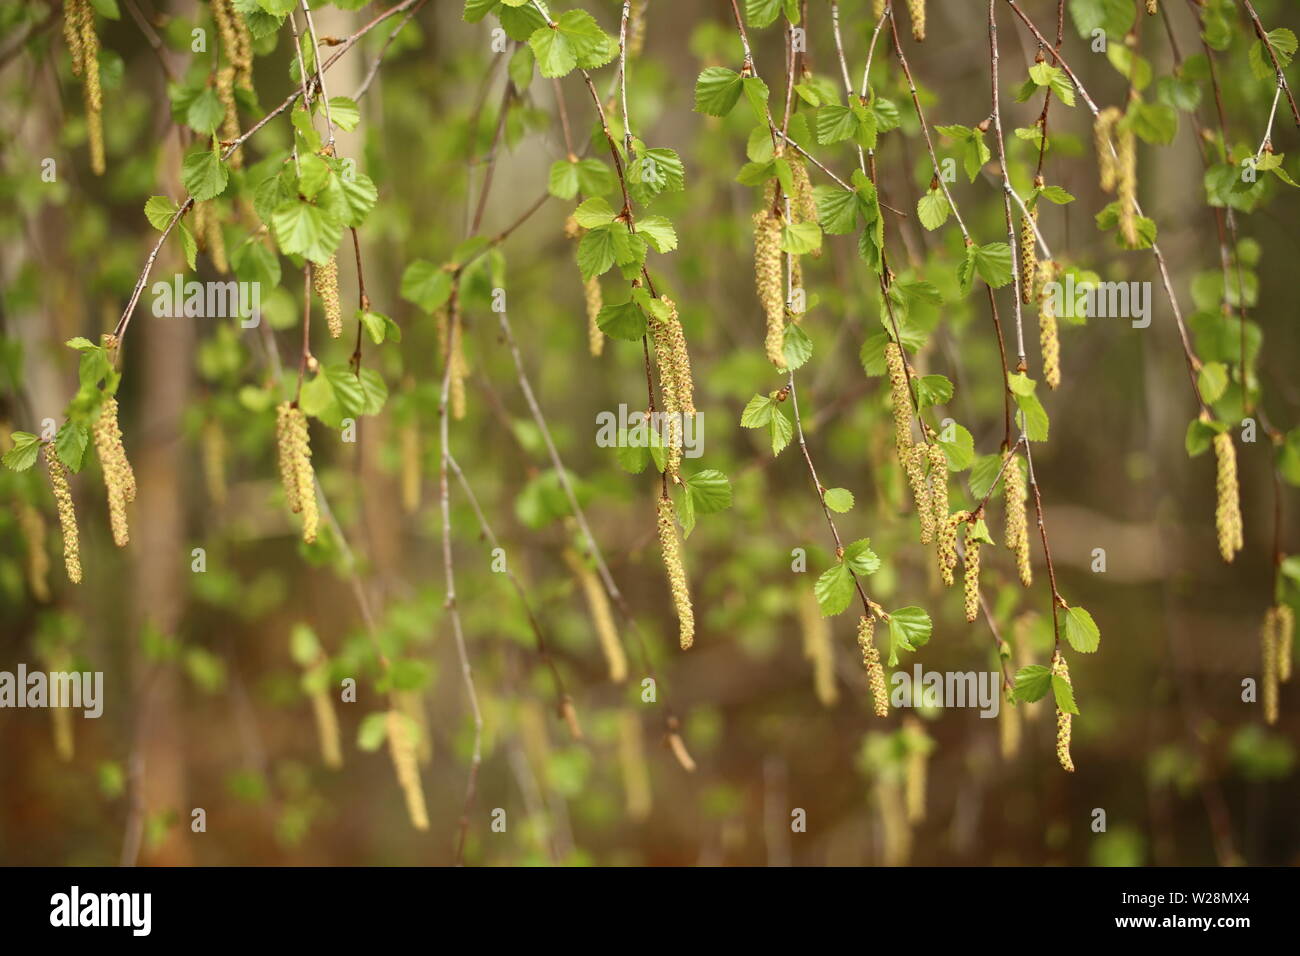 Rideau de feuilles et de chatons de Betula pendula, le bouleau blanc européen. Banque D'Images